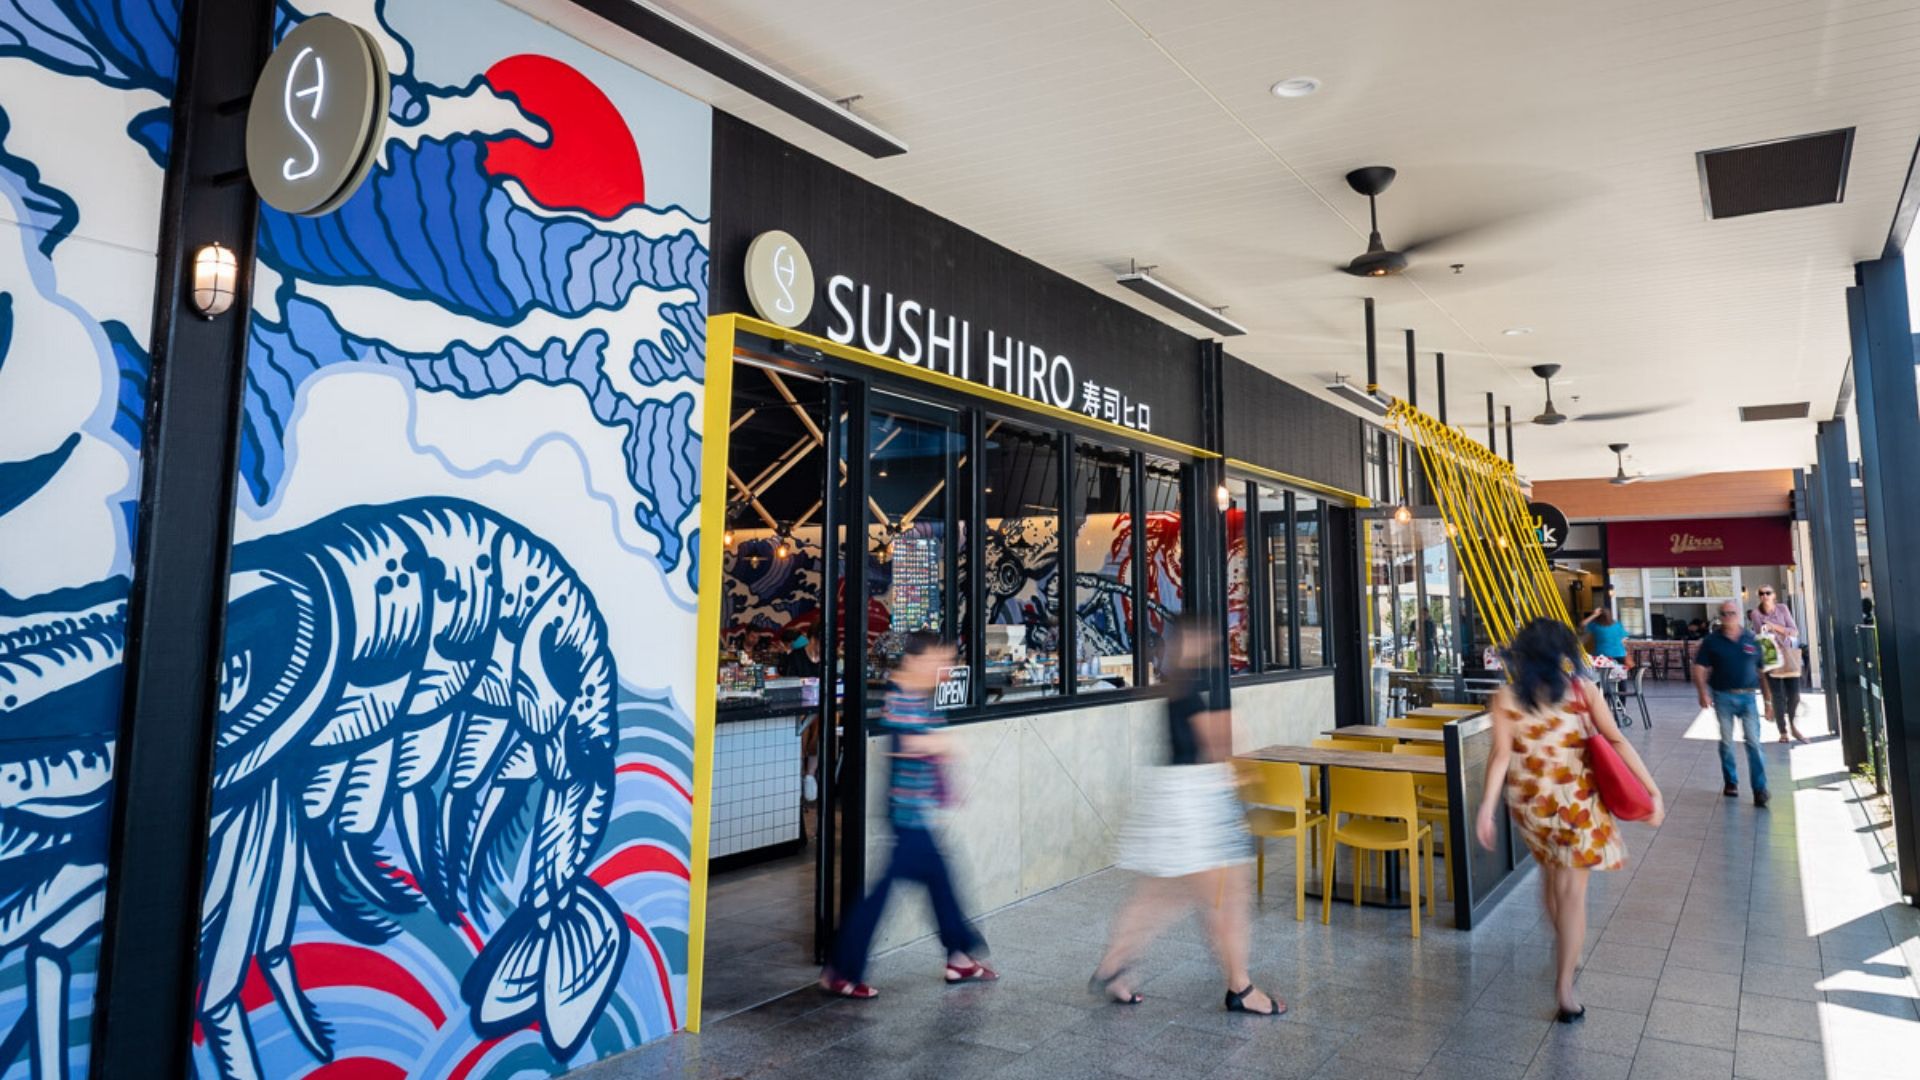 Port Adelaide Plaza - Sushi Hiro